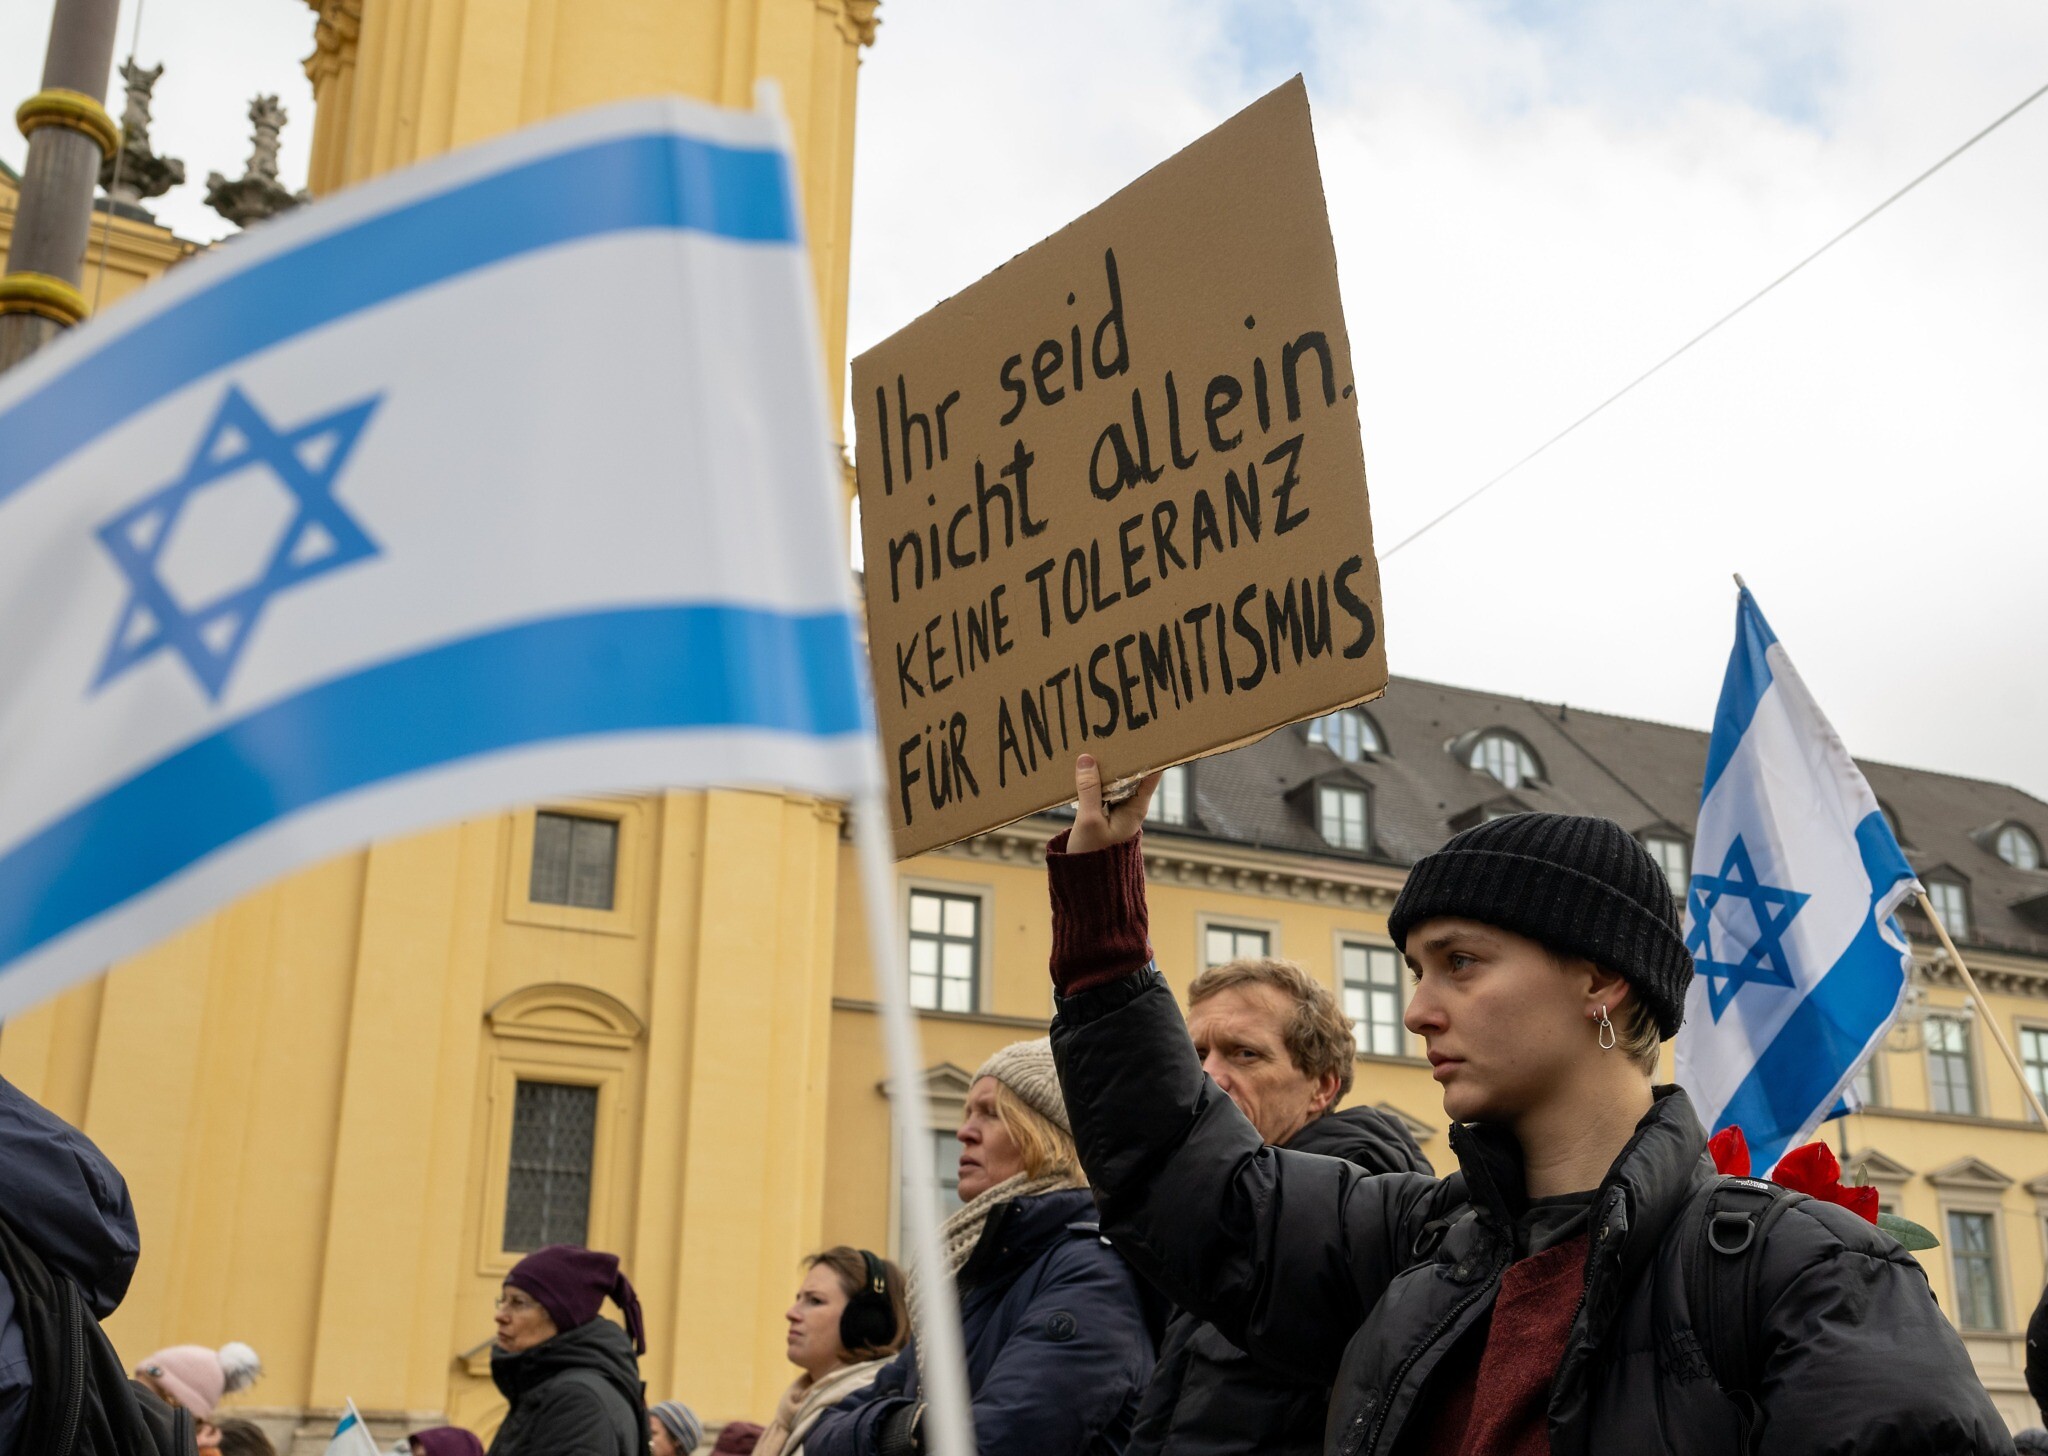 studimi incidentet me natyre antisemitike ne gjermani jane rritur me me shume se 80